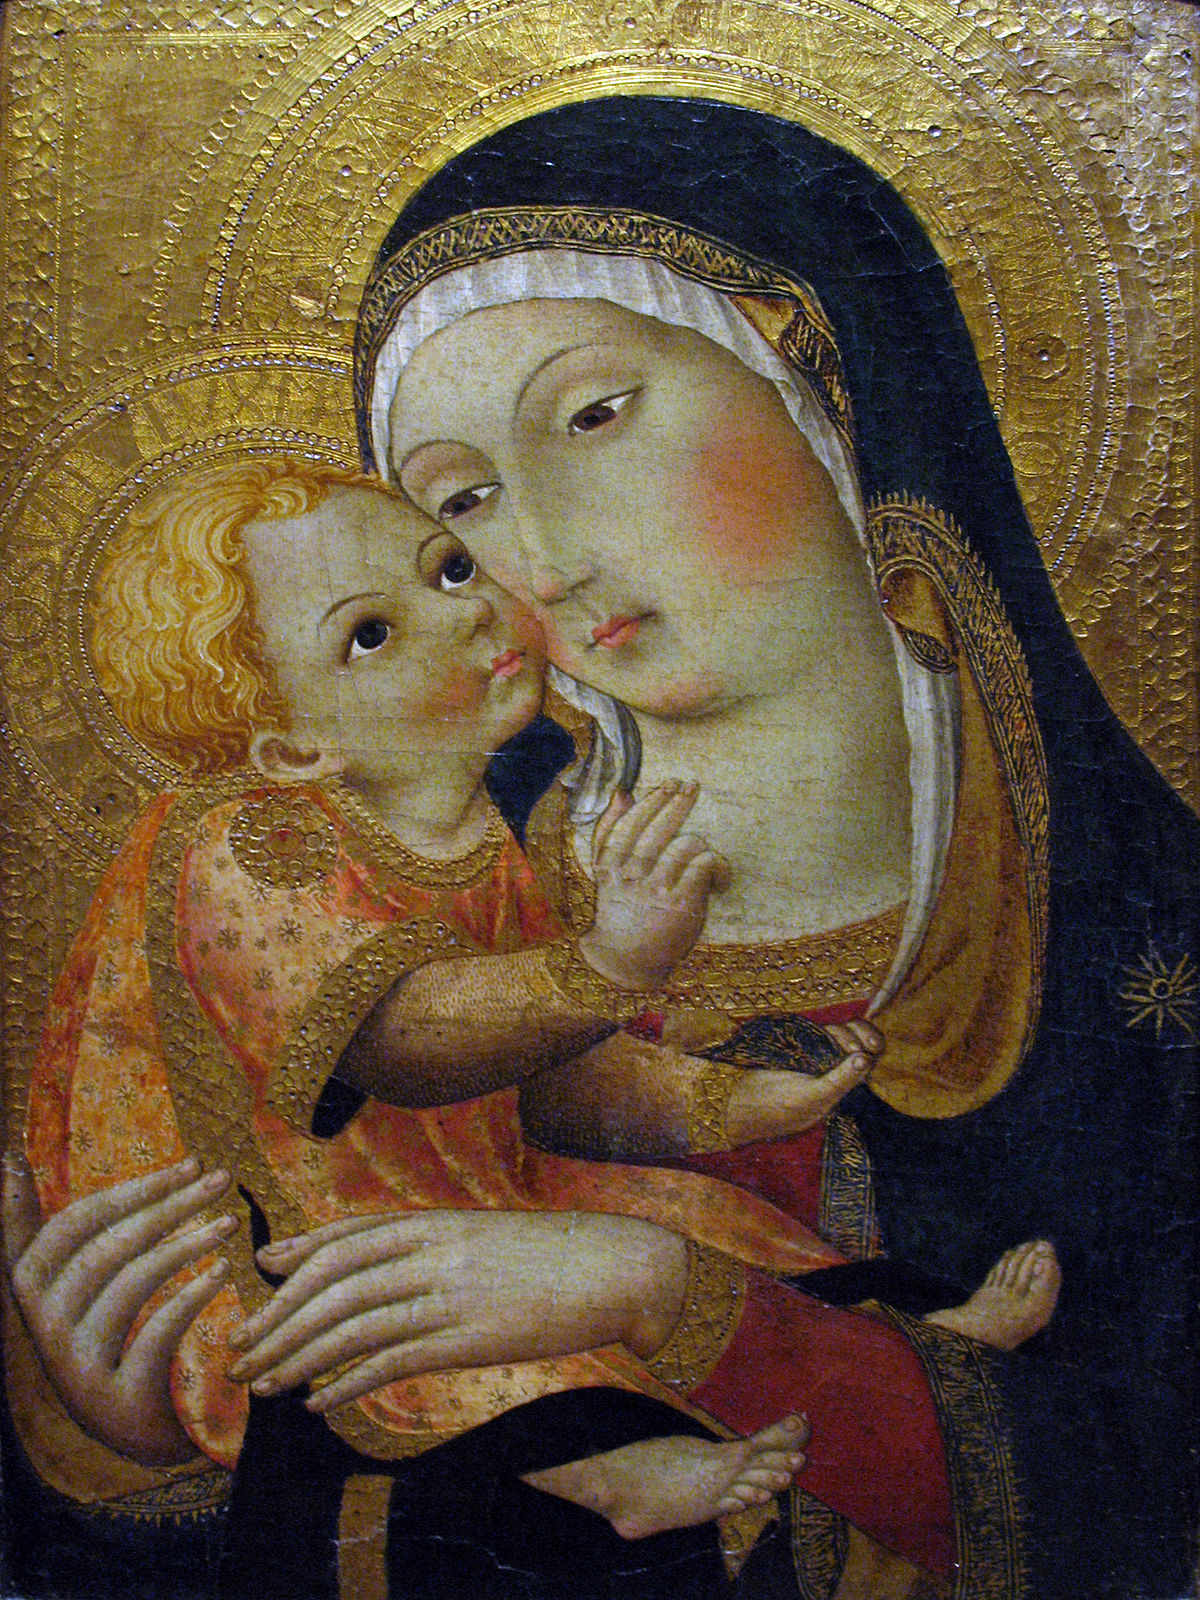 María en Iglesia católica - Wikipedia, la enciclopedia libre